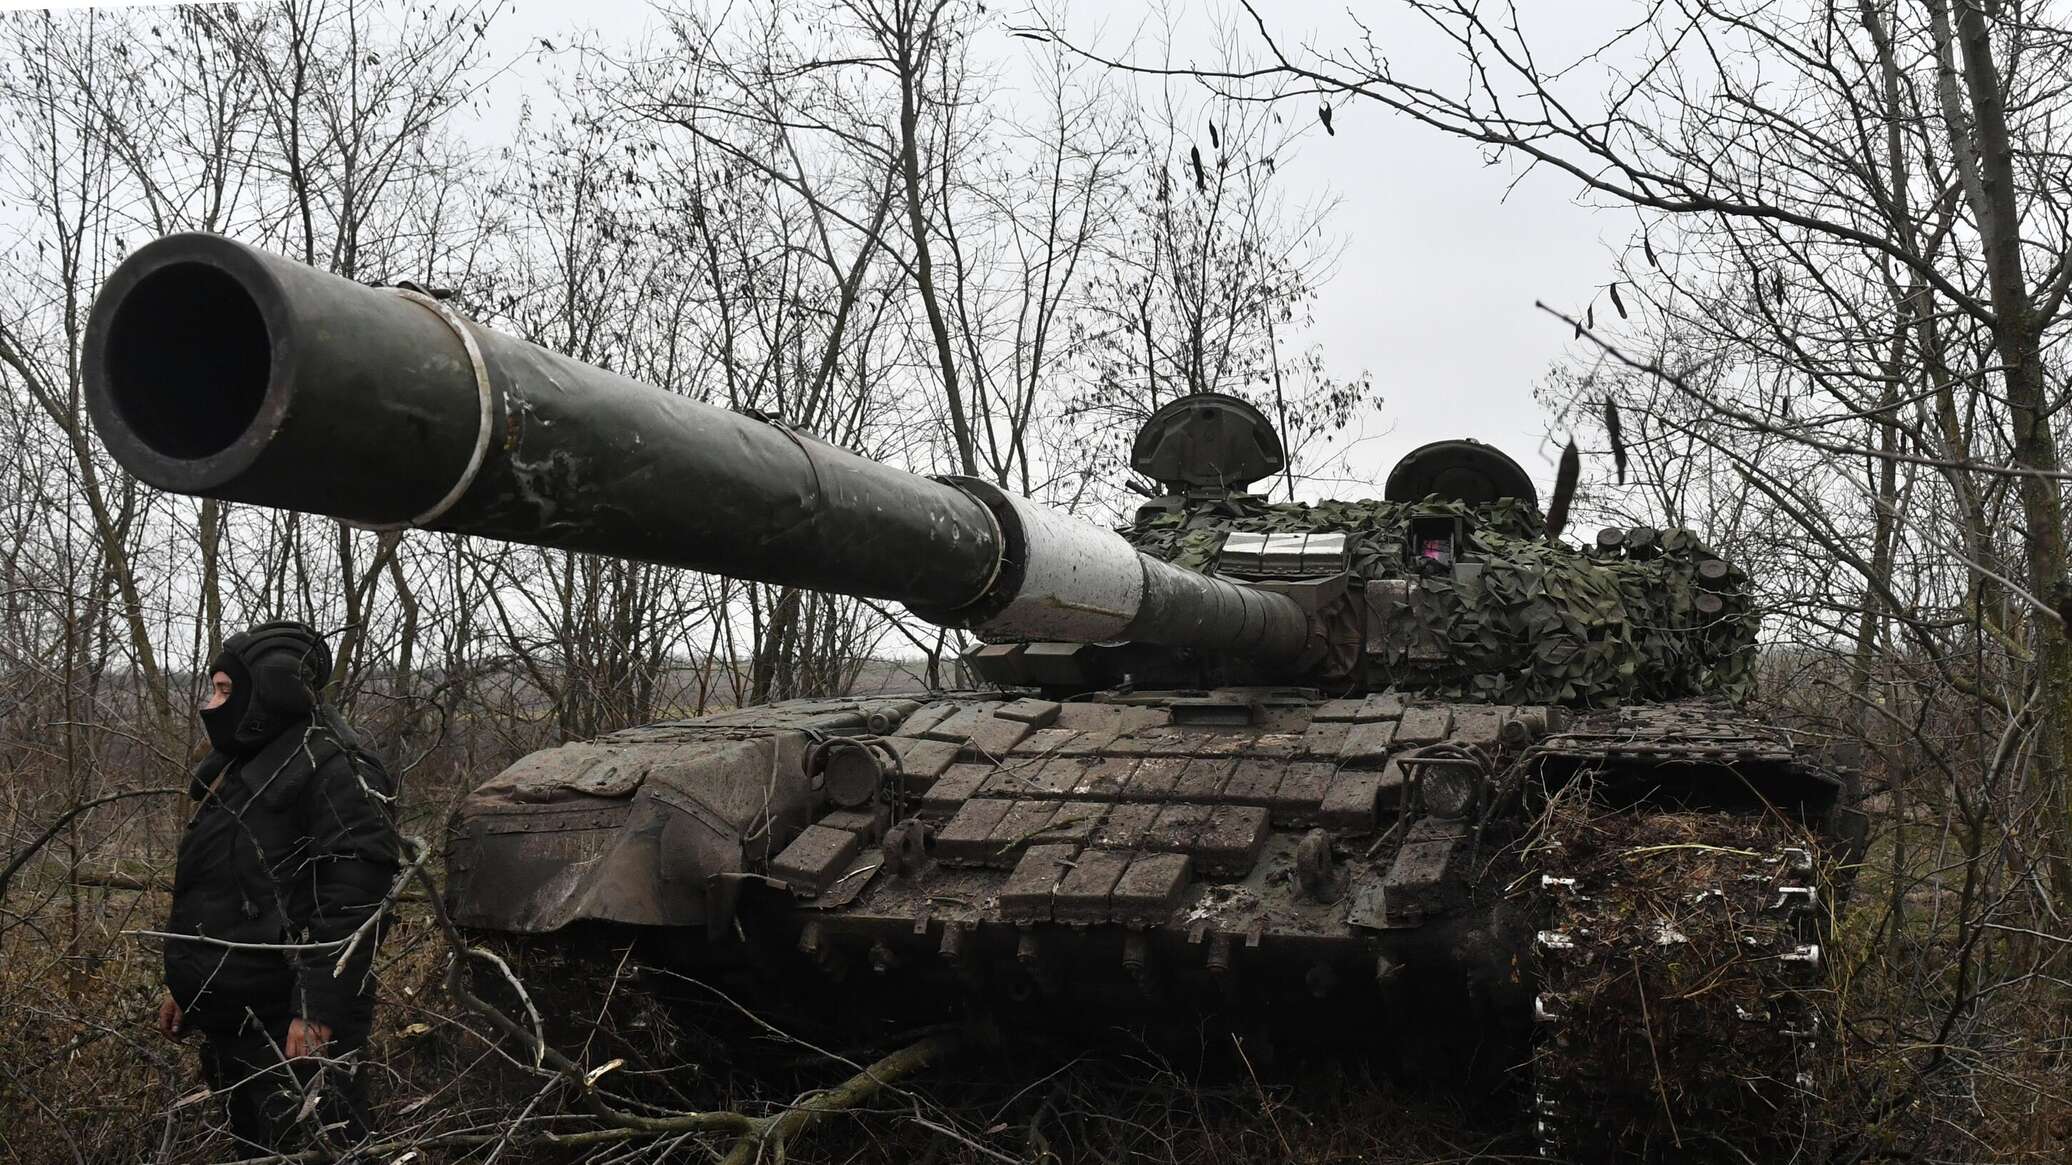 الدبابات الروسية تدمر وحدة دعم للقوات المسلحة الأوكرانية في اتجاه دونيتسك... فيديو